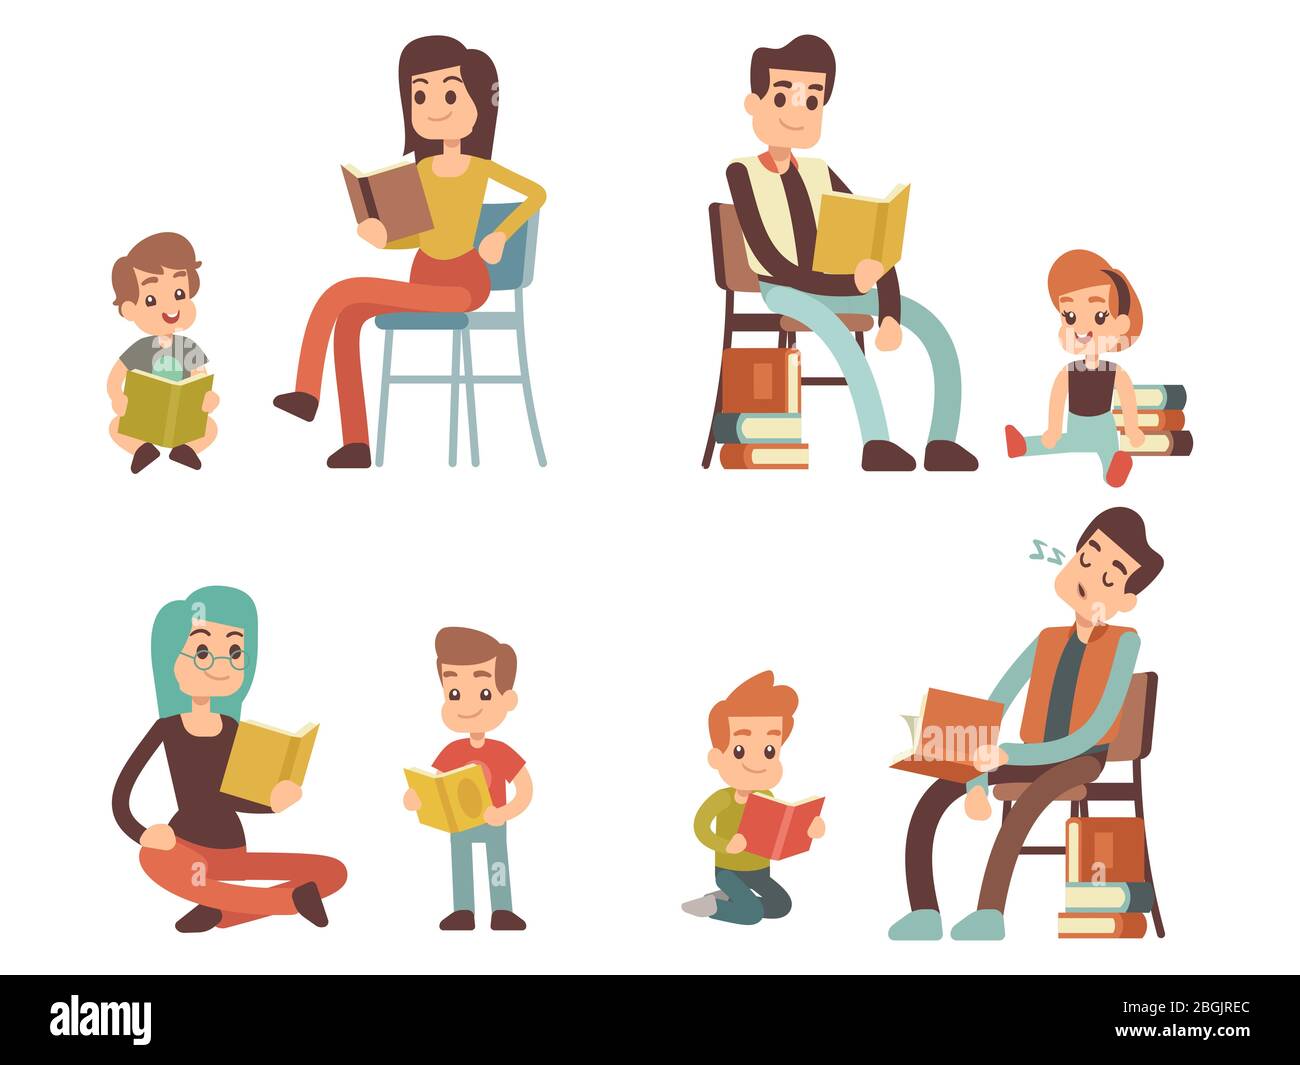 Cartoon-Charakter Erwachsene und Kinder Bücher lesen isoliert auf weißem Hintergrund. Vektorgrafik Stock Vektor